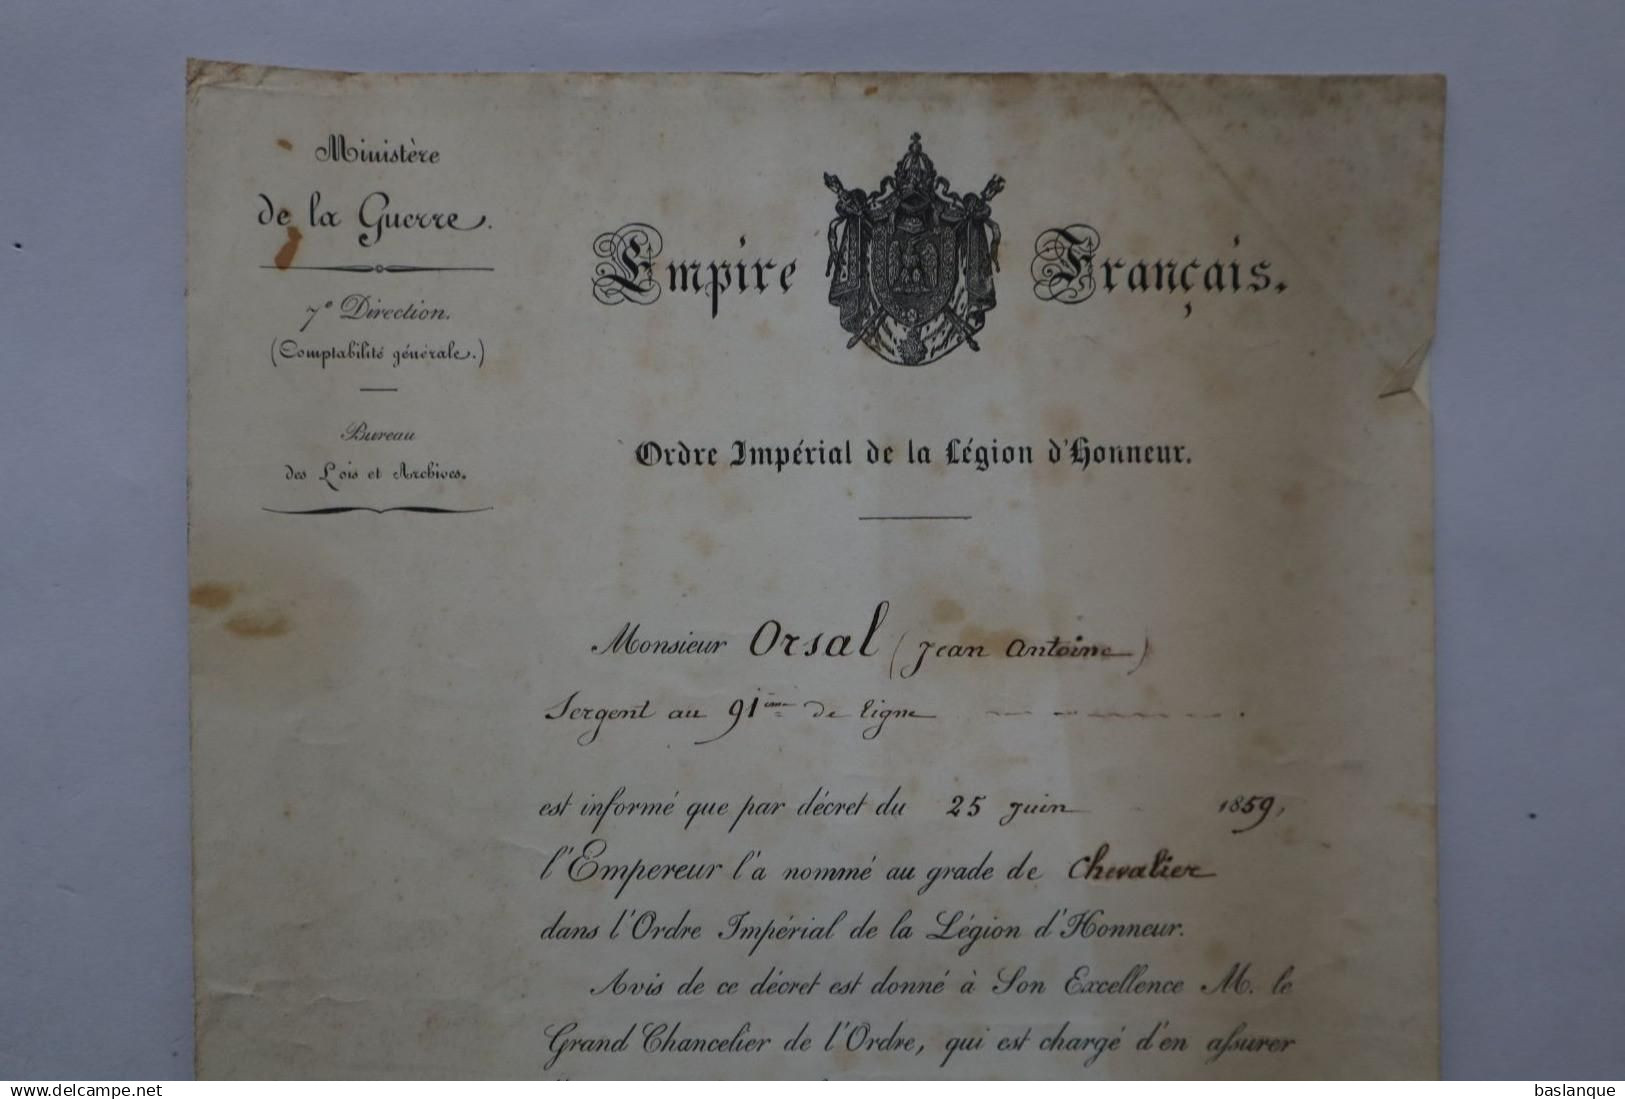 Ensemble Diplômes Sergent ORSAL Italie, Crimée, Légion d'honneur, Valor militare Sarde 1859